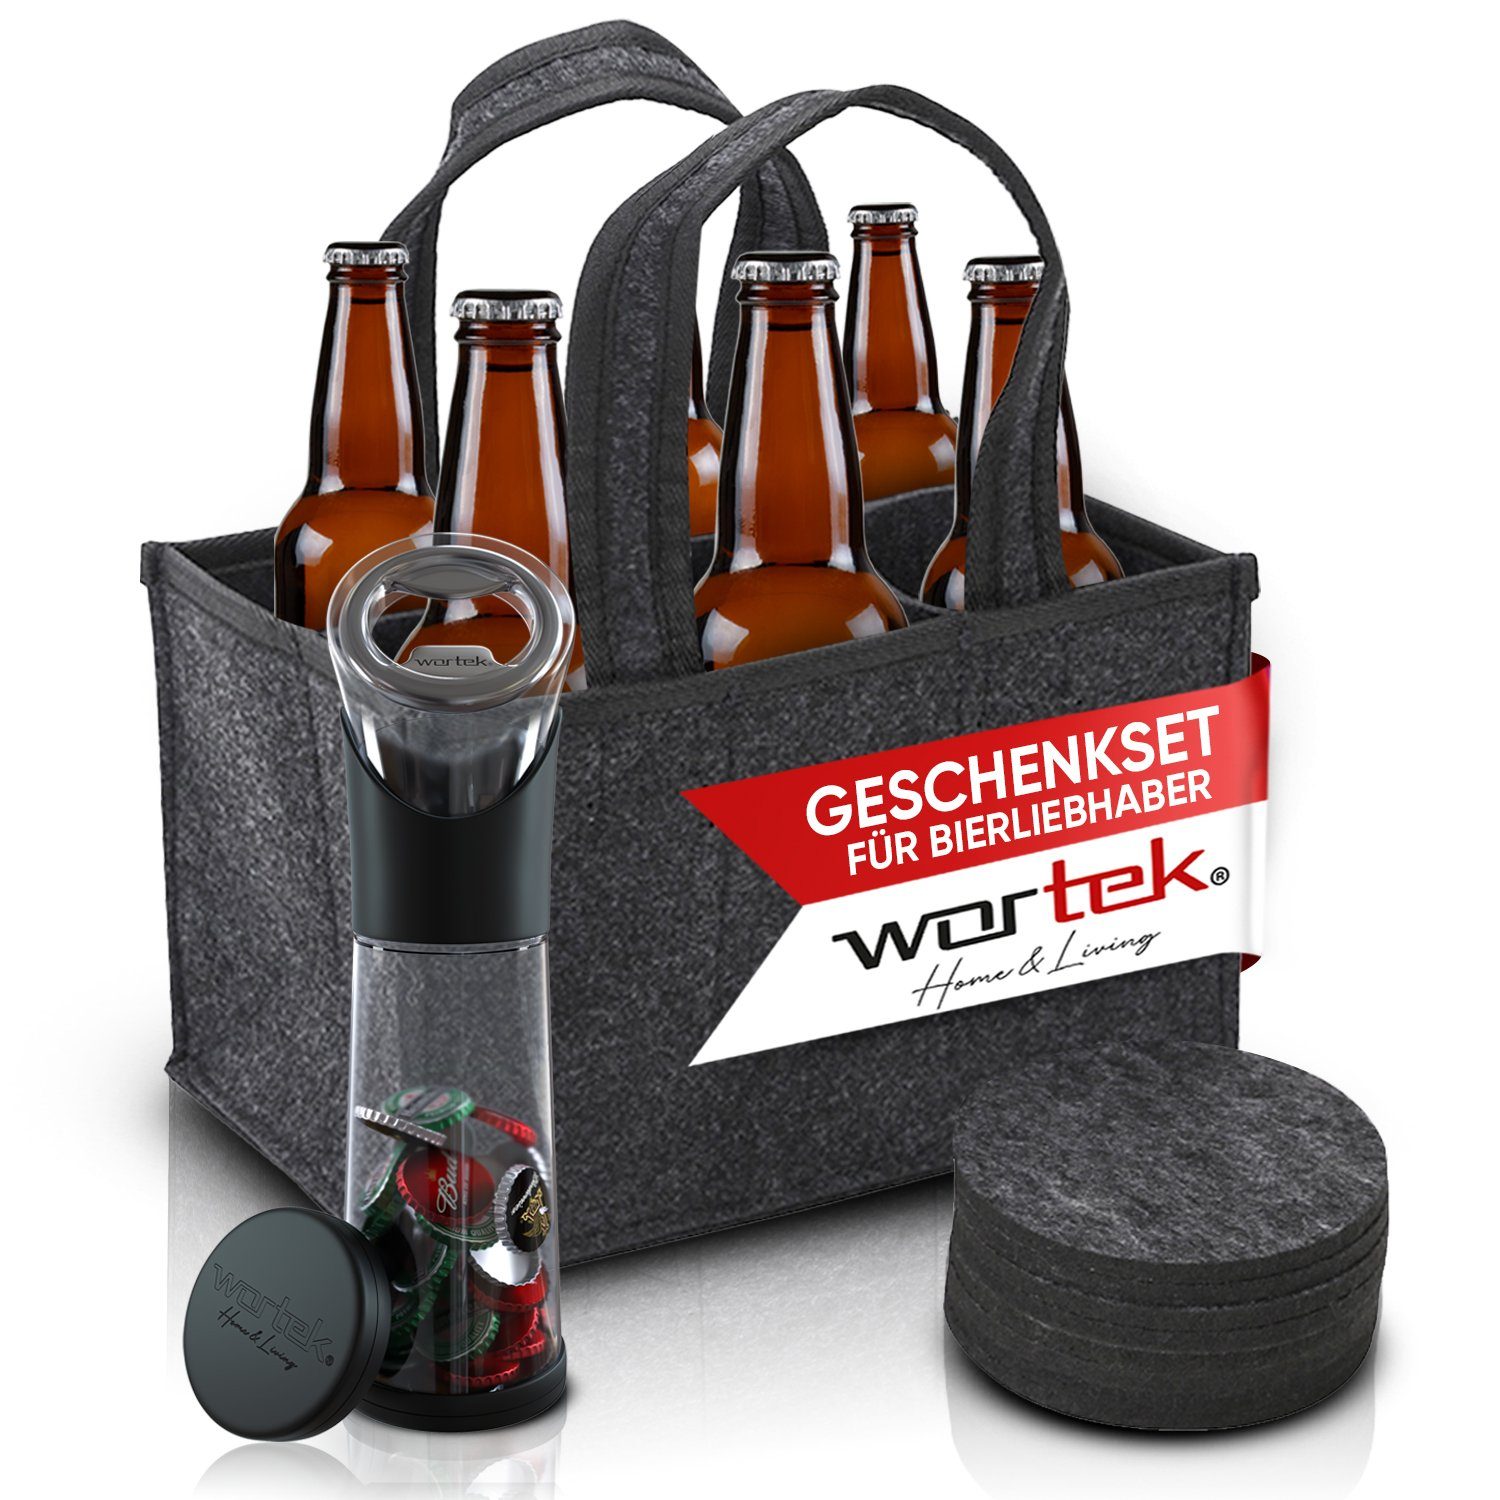 Filz Männerhandtasche (Set, Männer 3-St), und wortek Geschenkset Flaschenträger Bierliebhaber für